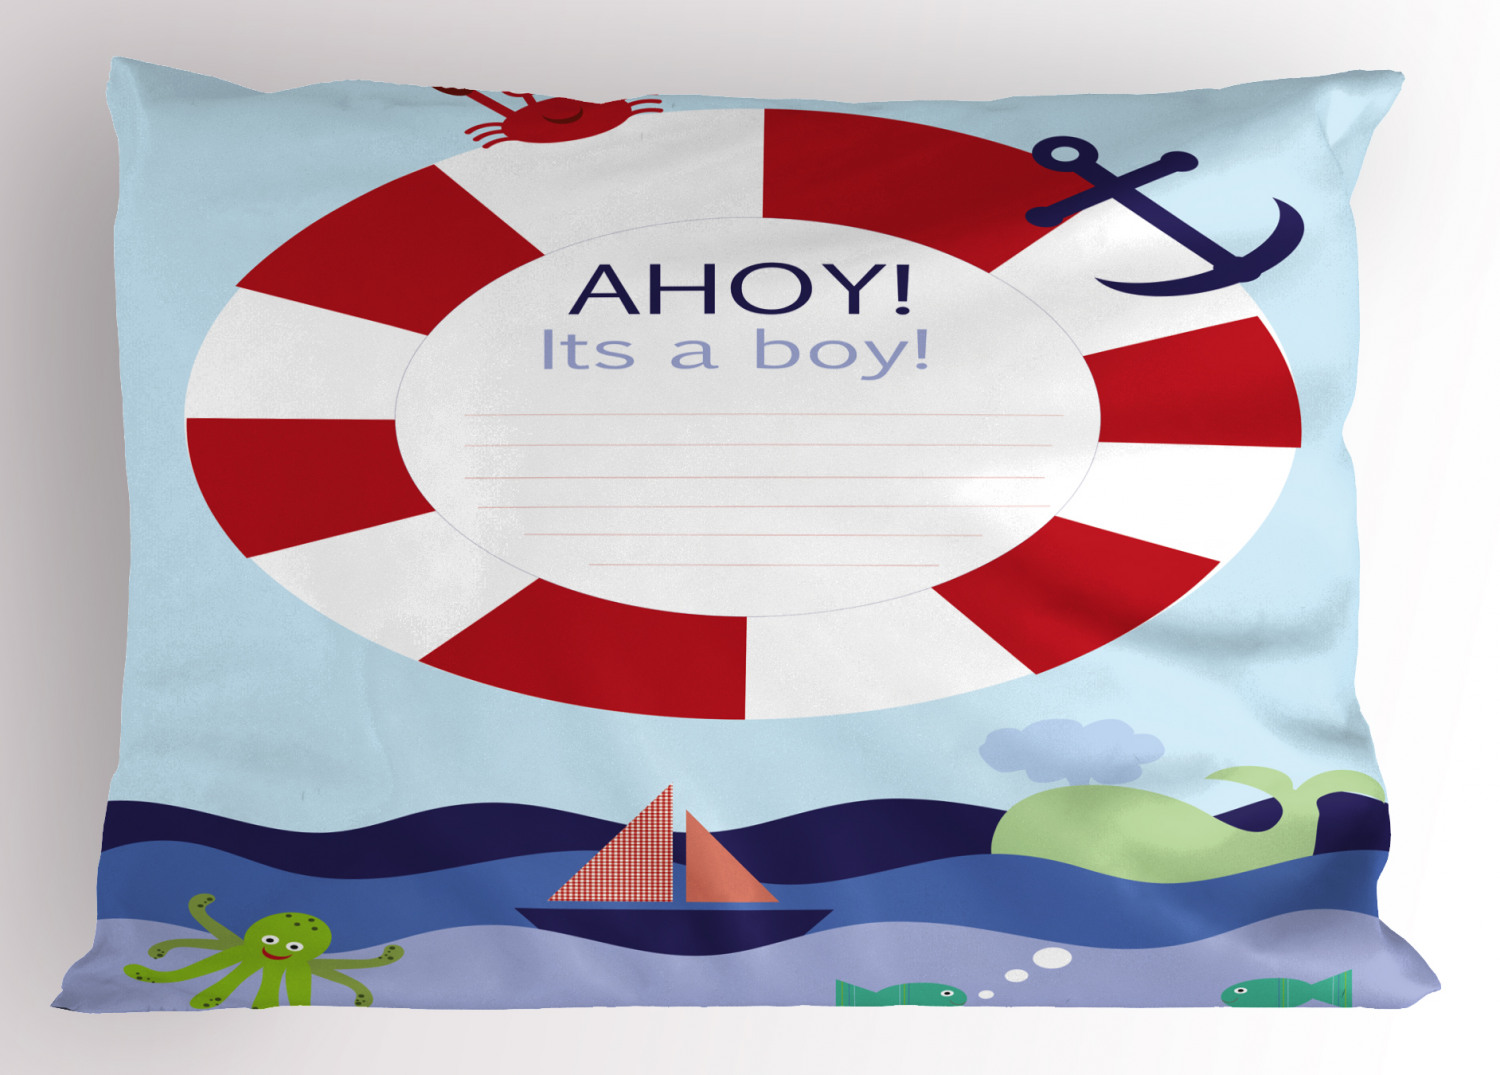 Details about   Ahoy Its a Boy Pillow Sham Decorative Pillowcase 3 Sizes Bedroom Decor 